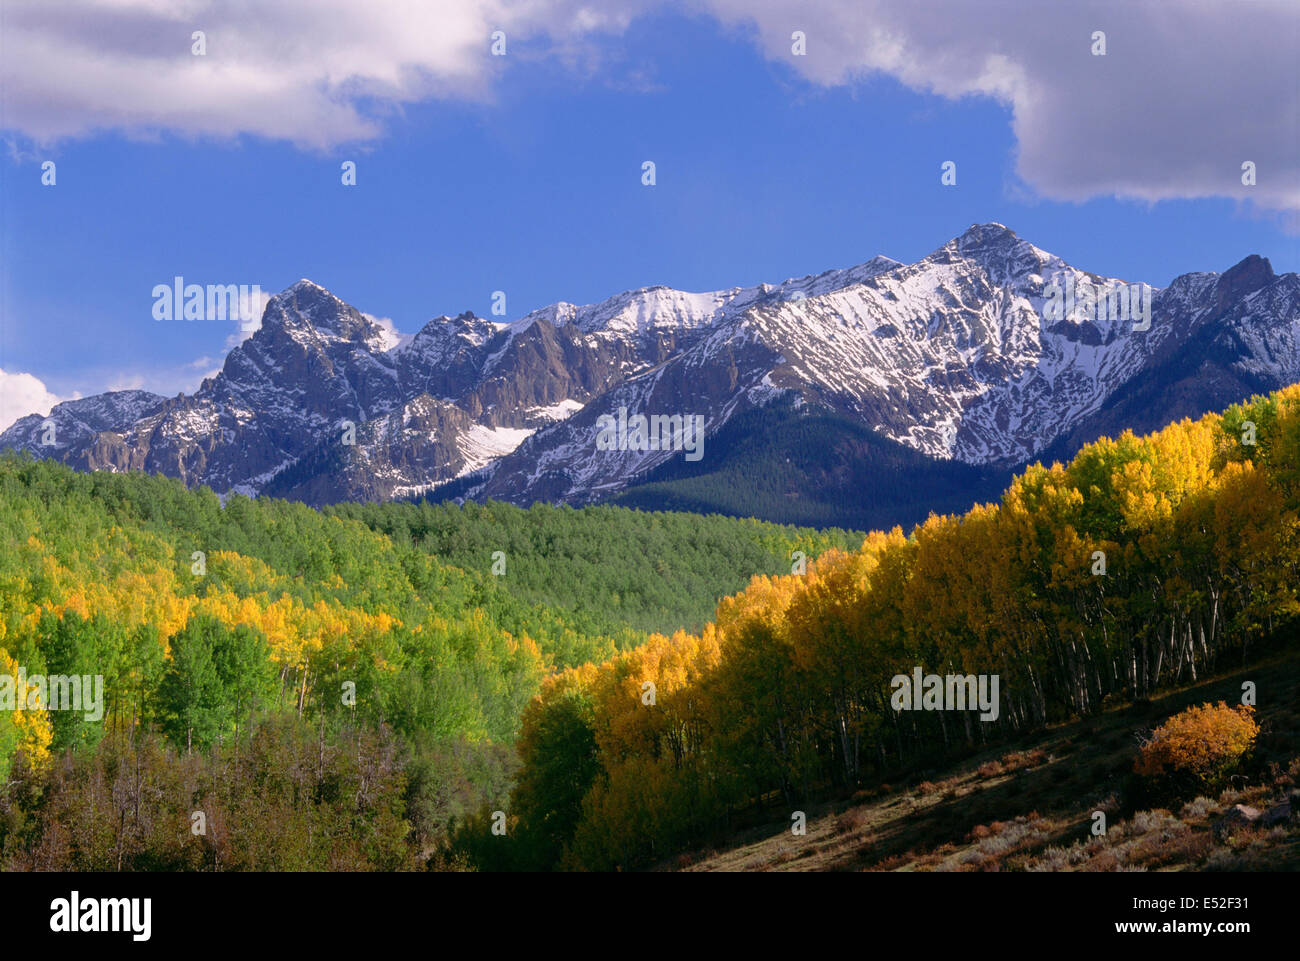 Mont Sneffels dans les montagnes de San Juan, à Ouray Comté. Tremble arbres en automne. Banque D'Images